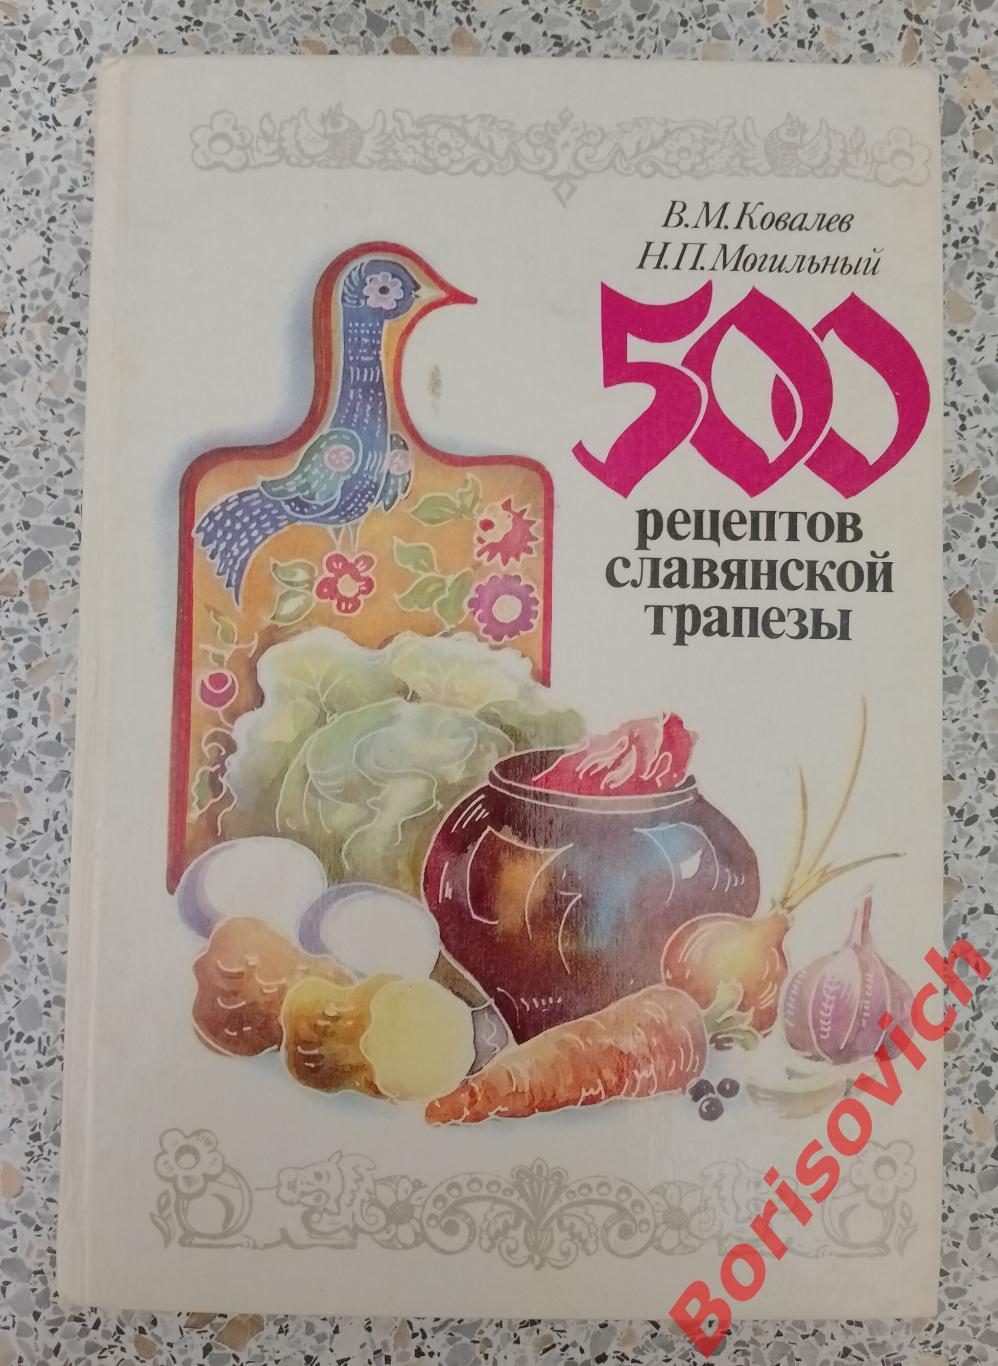 500 рецептов славянской трапезы 1993 г 272 стр